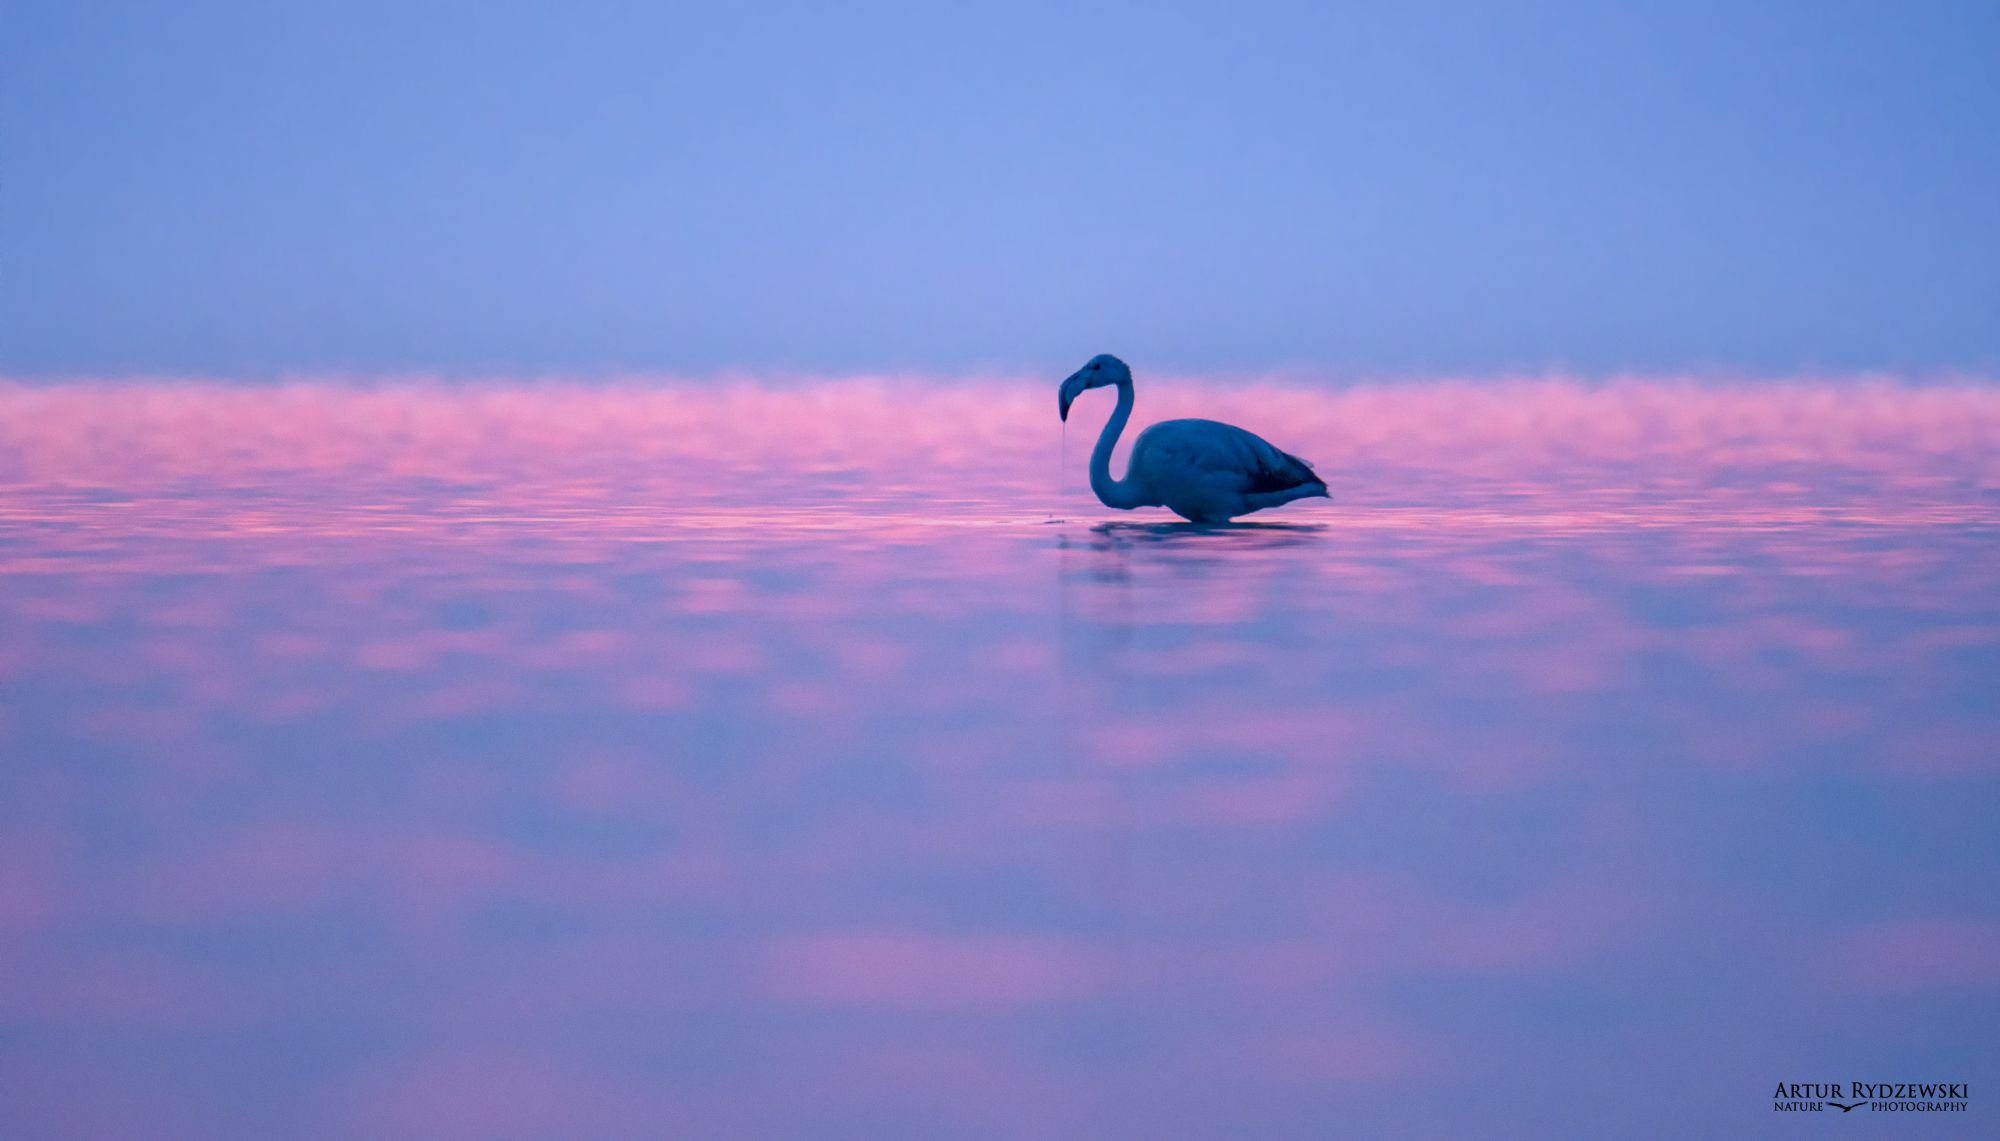 Flamingo Rydzewski nature photography